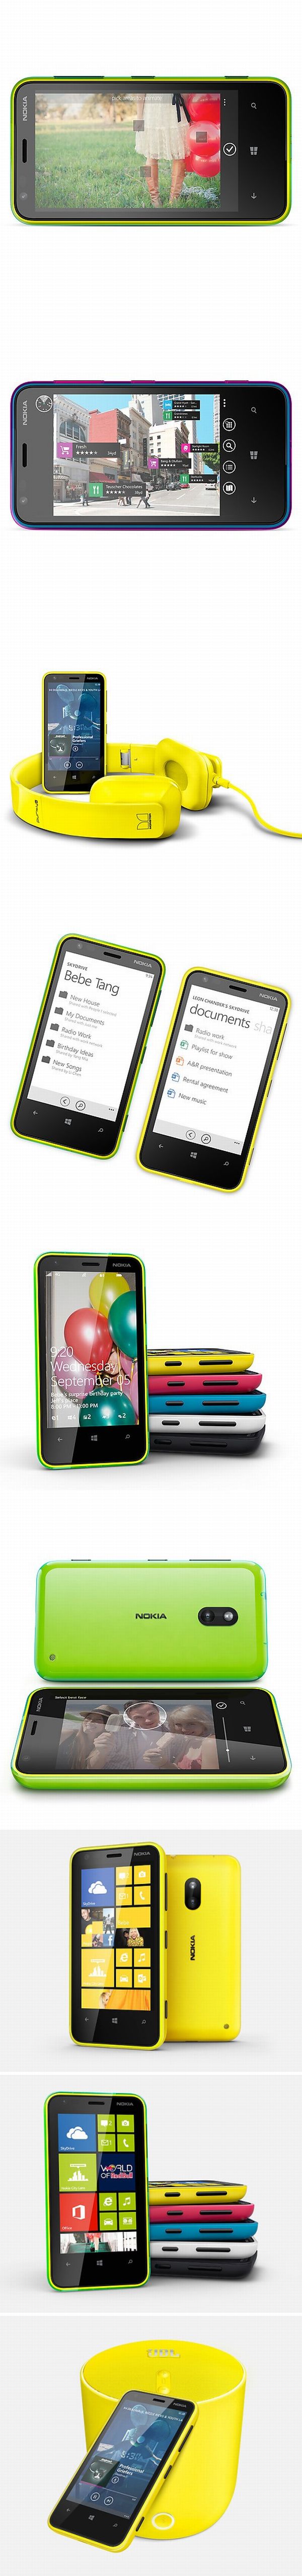 Nokia Lumia 620: olcsó Windows Phone mobil